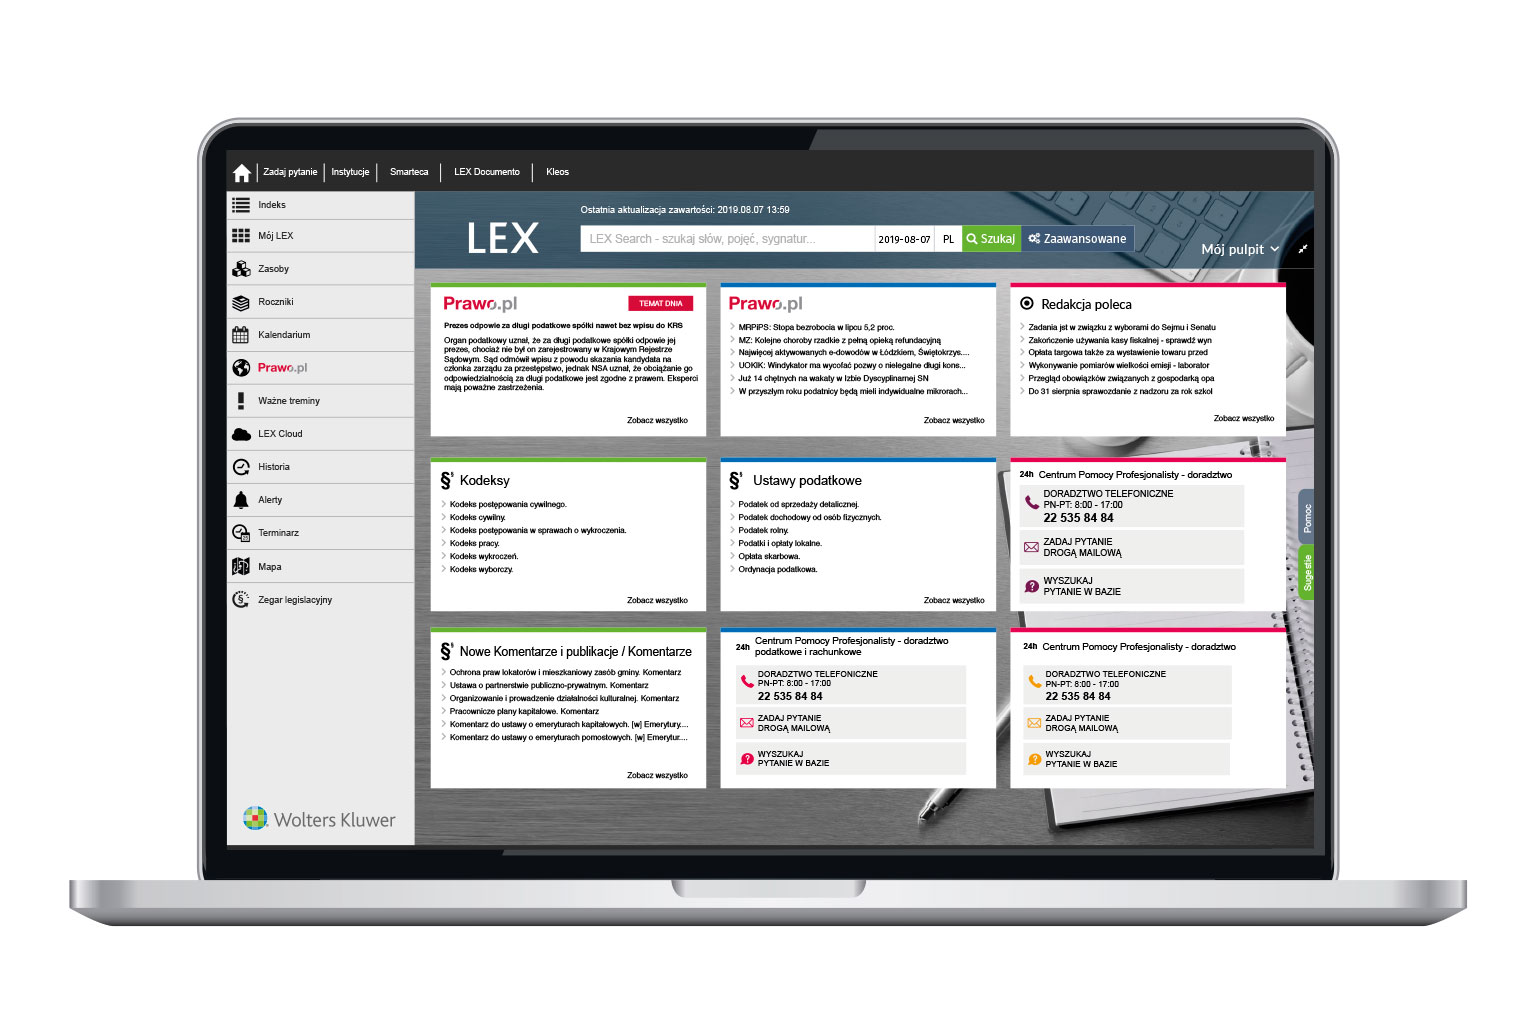 Baza wiedzy w LEX Biznes